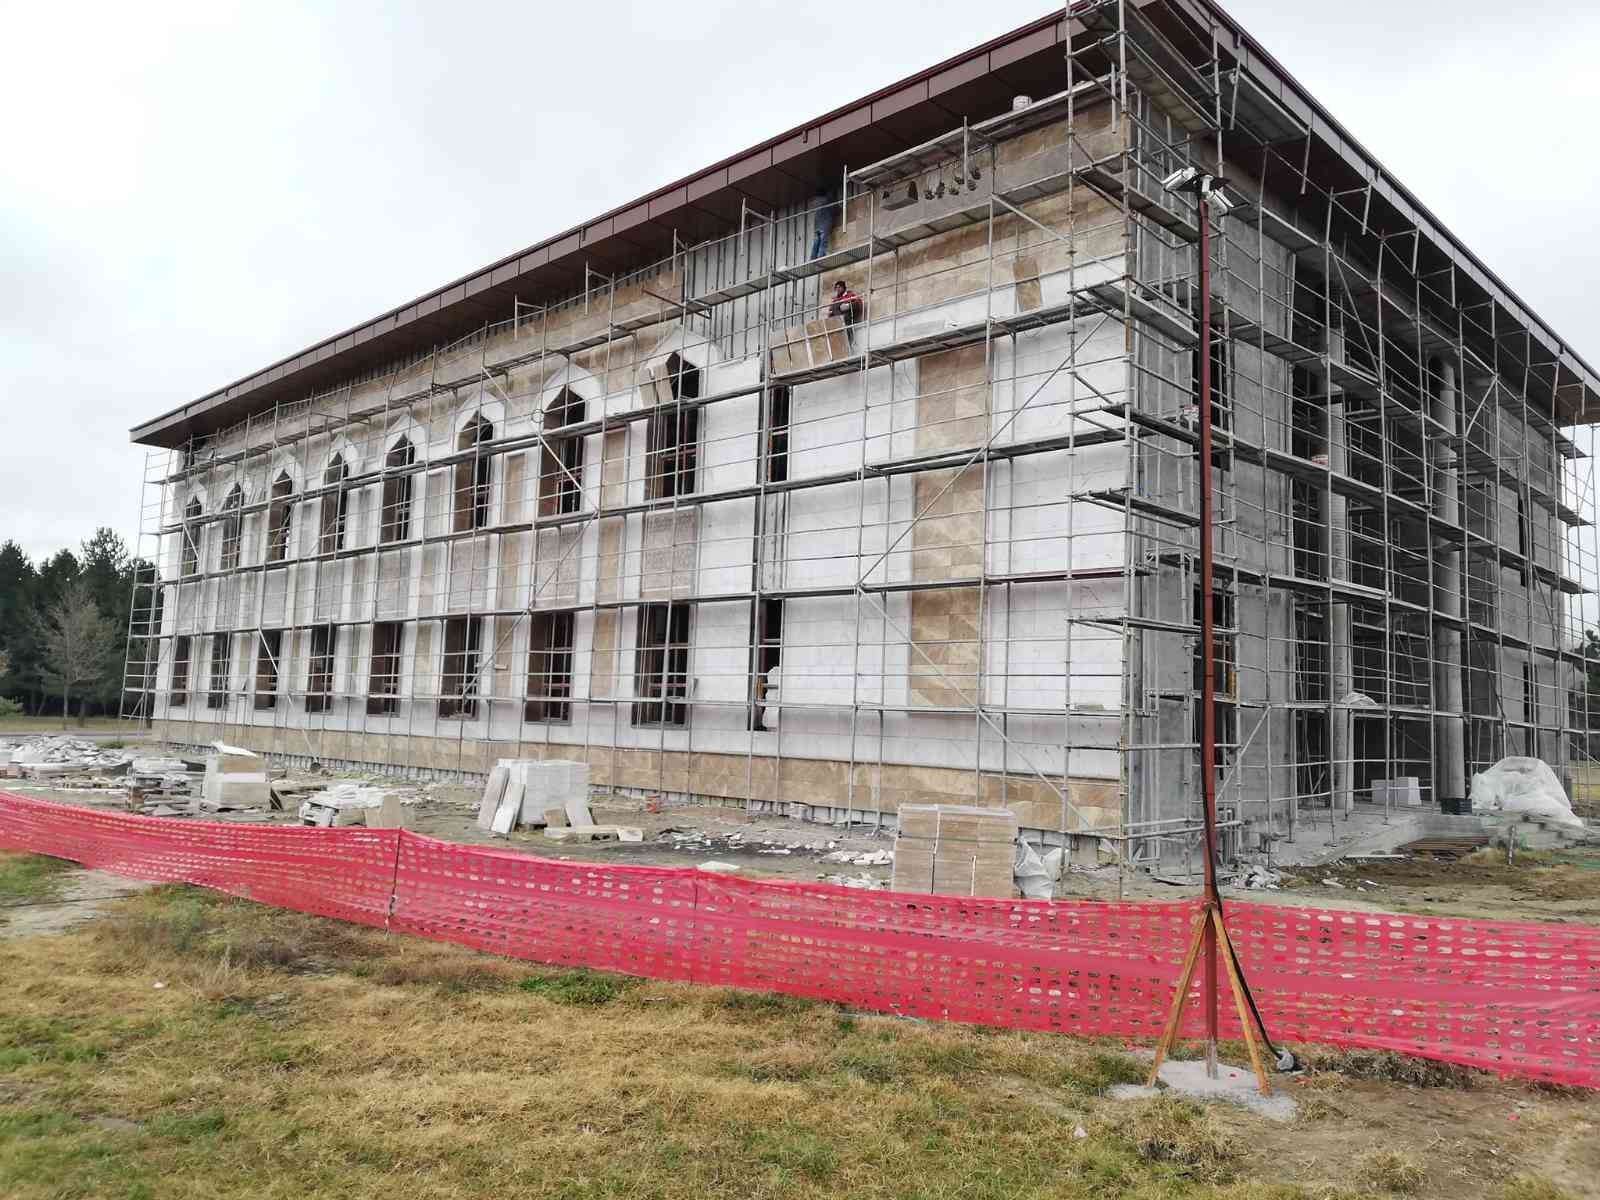 Kütahya’da Mehmetçik Camii inşaatı hızla devam ediyor #kutahya